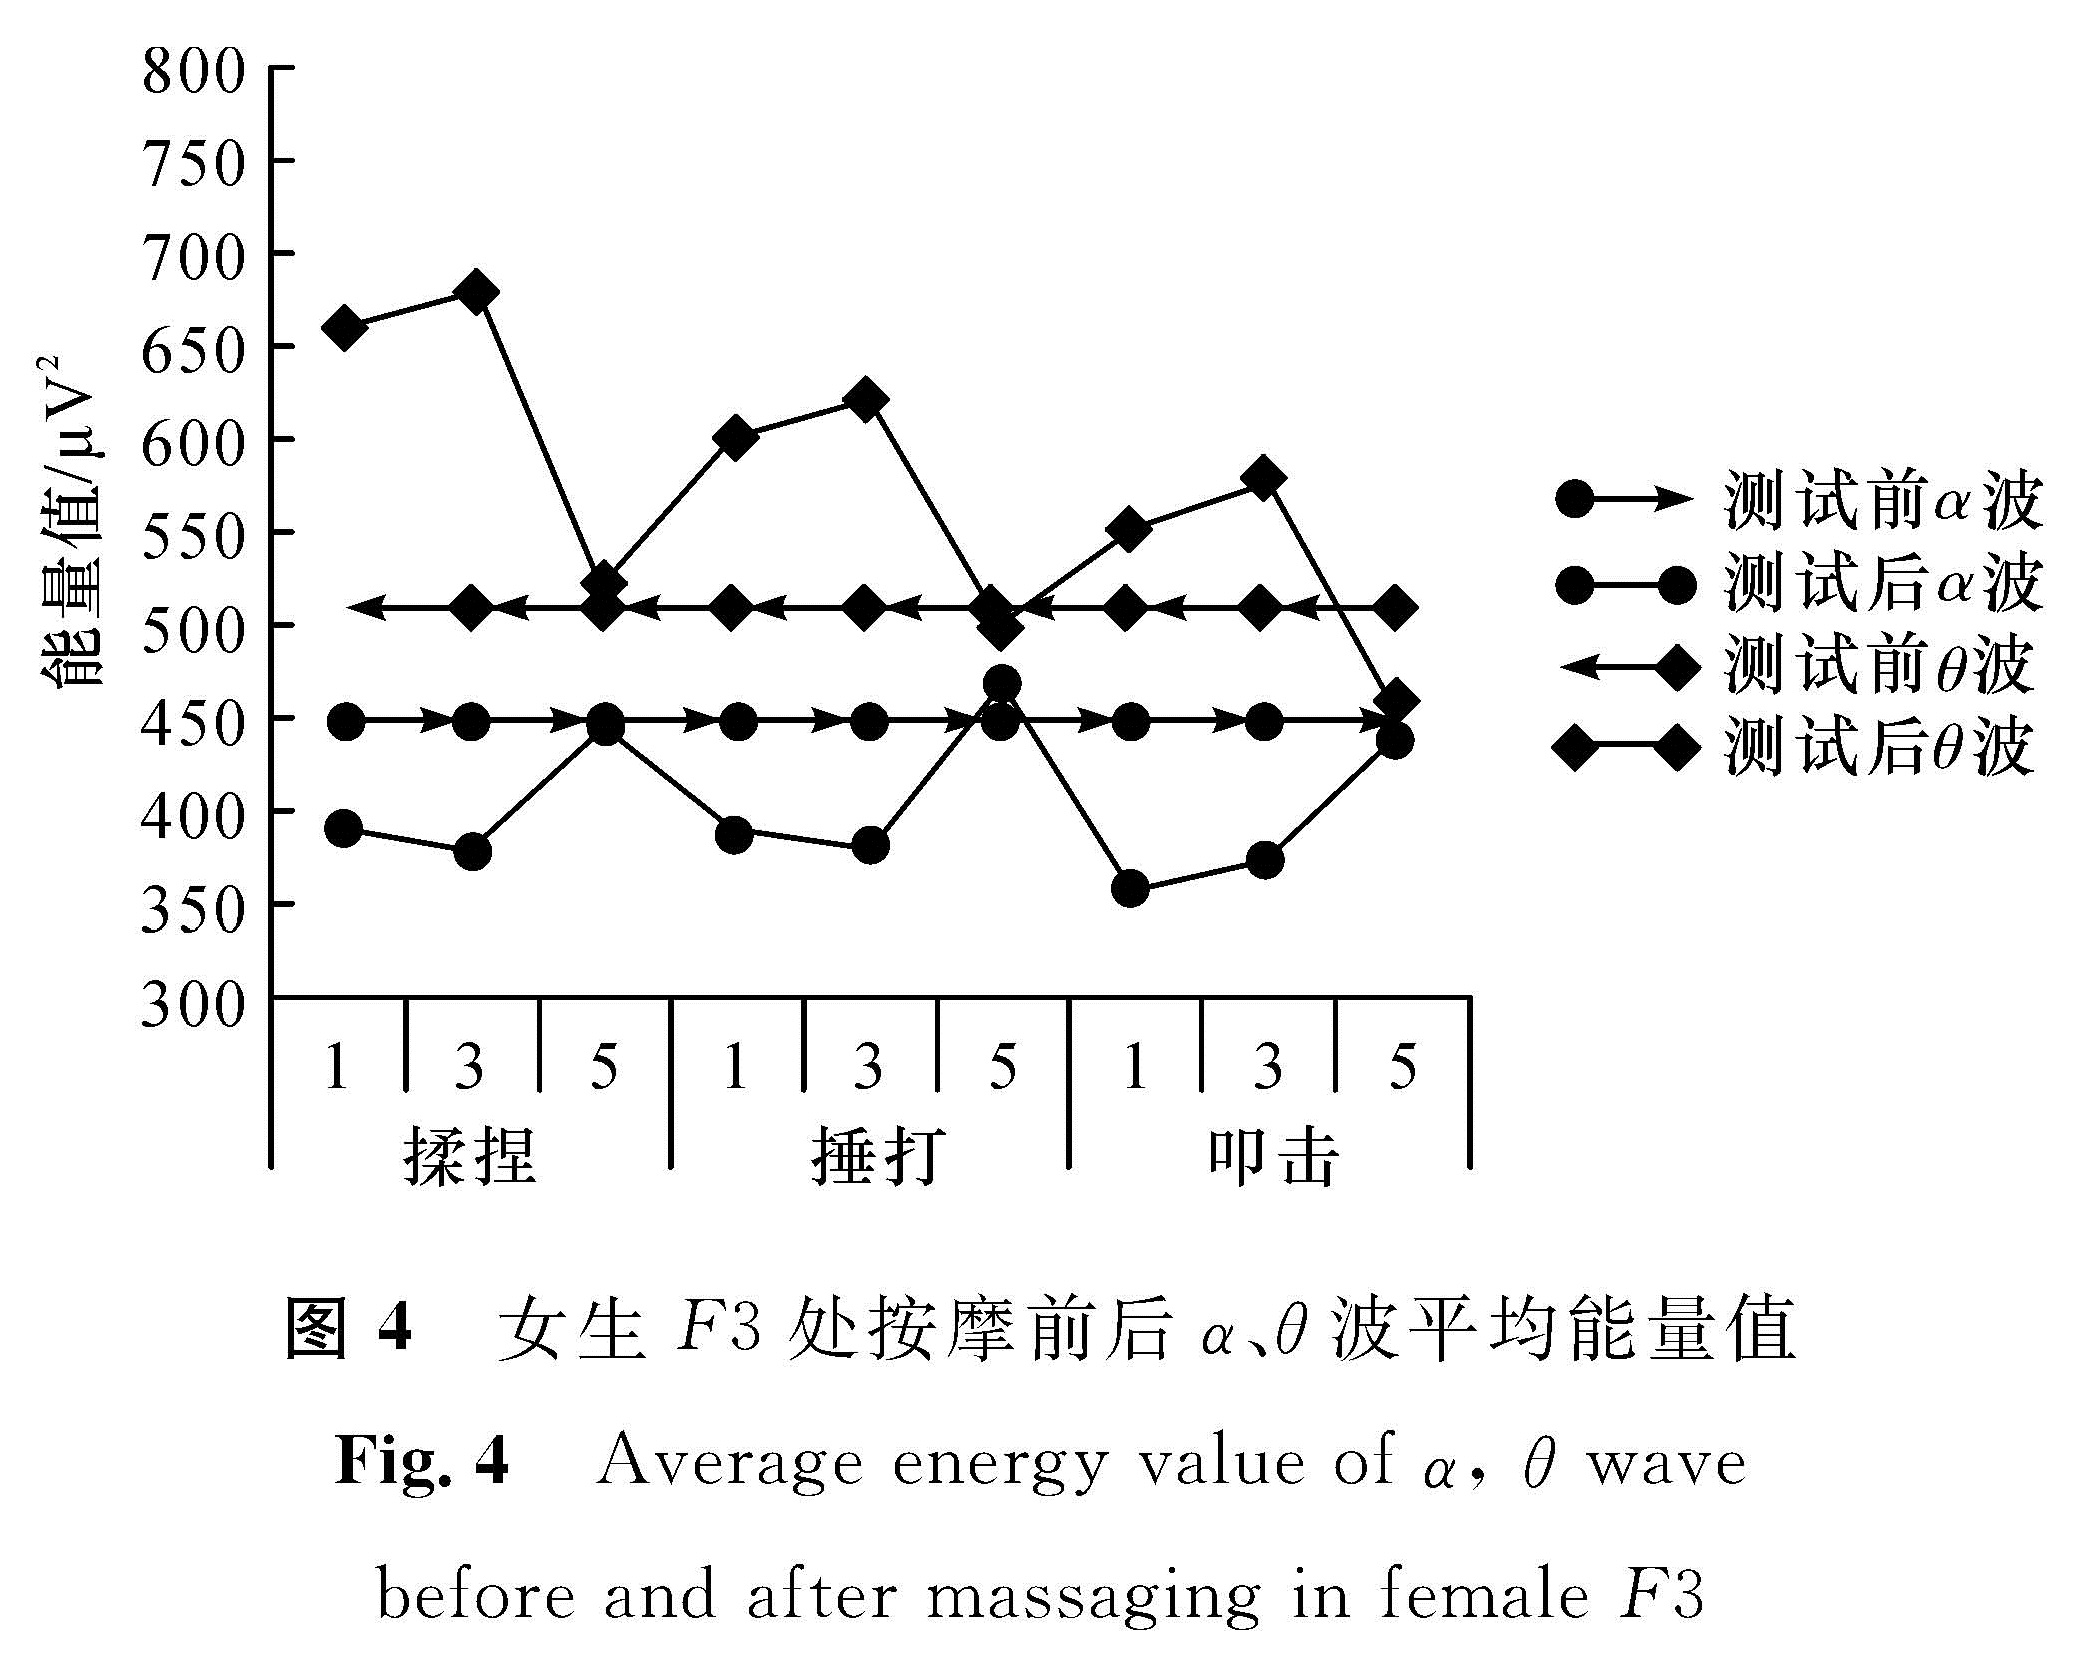 图4 女生F3处按摩前后α、θ波平均能量值<br/>Fig.4 Average energy value of α, θ wavebefore and after massaging in female F3